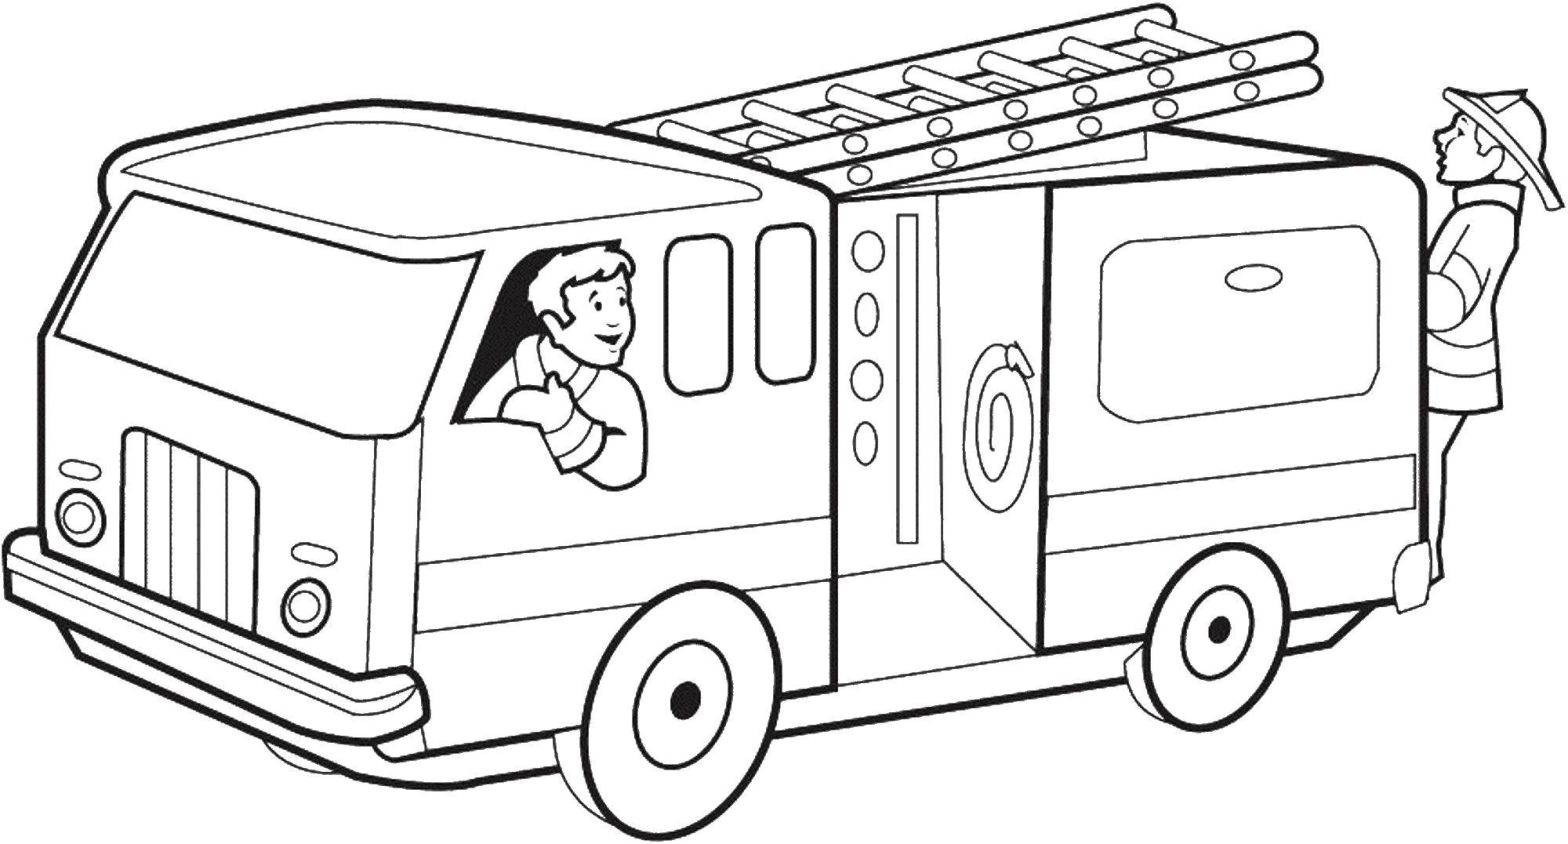 Раскраска пожарной машины для детей (пожарный, машина)